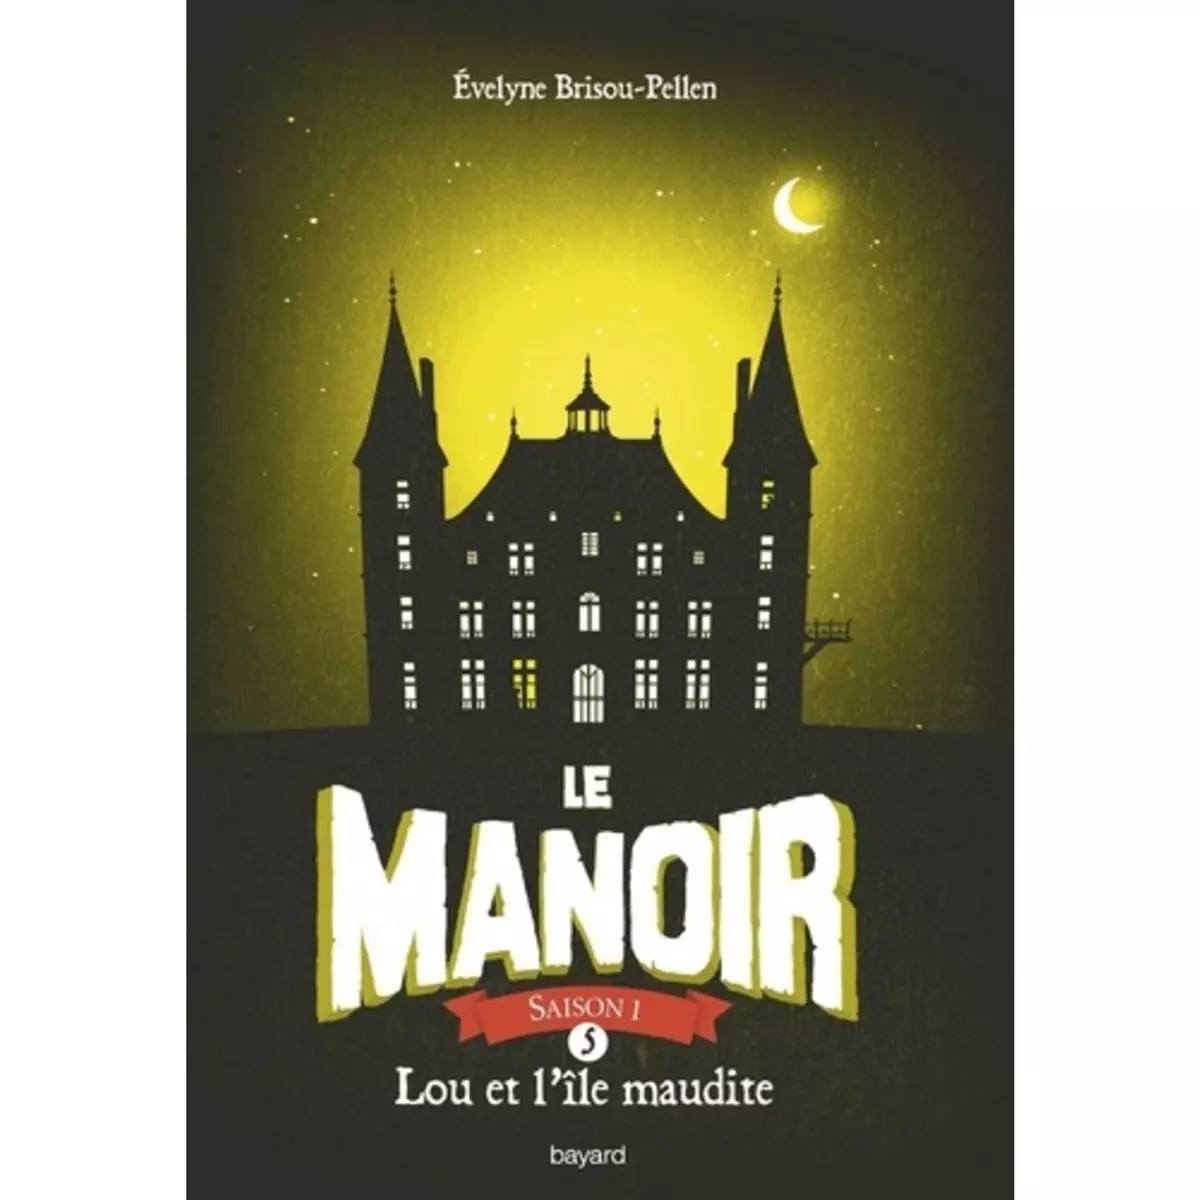  LE MANOIR, SAISON 1 TOME 5 : LOU ET L'ILE MAUDITE, Brisou-Pellen Evelyne